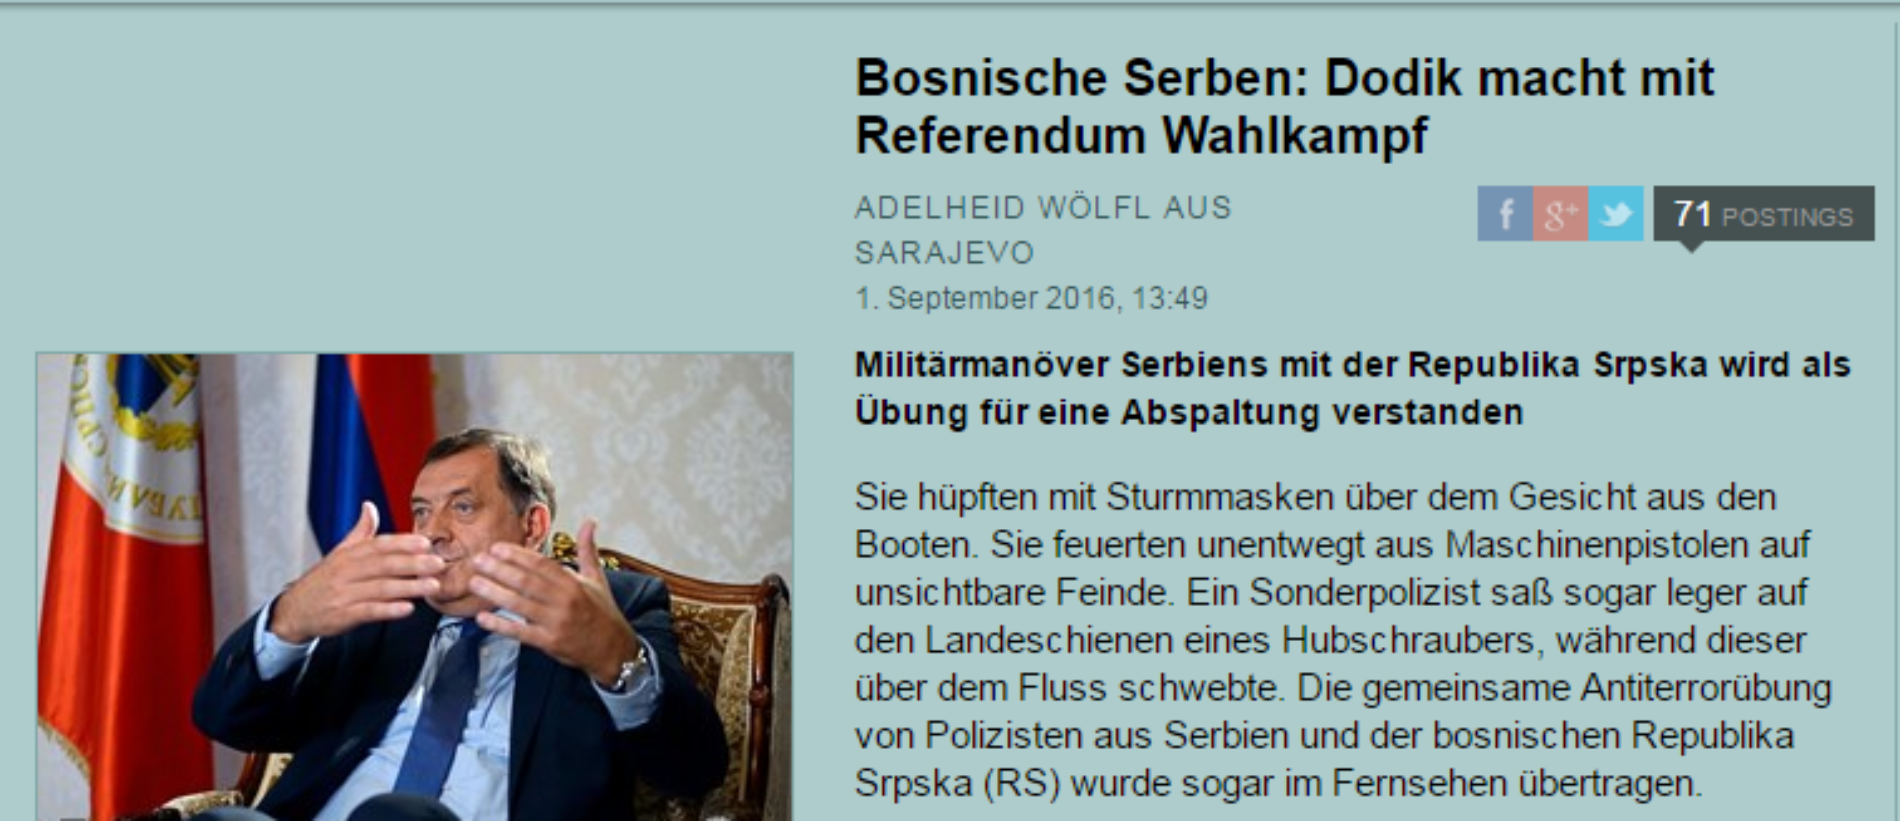 Austrijski mediji: RS je bankrotirala, socijalna situacija je loša. Moćnik iz Banja Luke opet igra na kartu etnonacionalizma